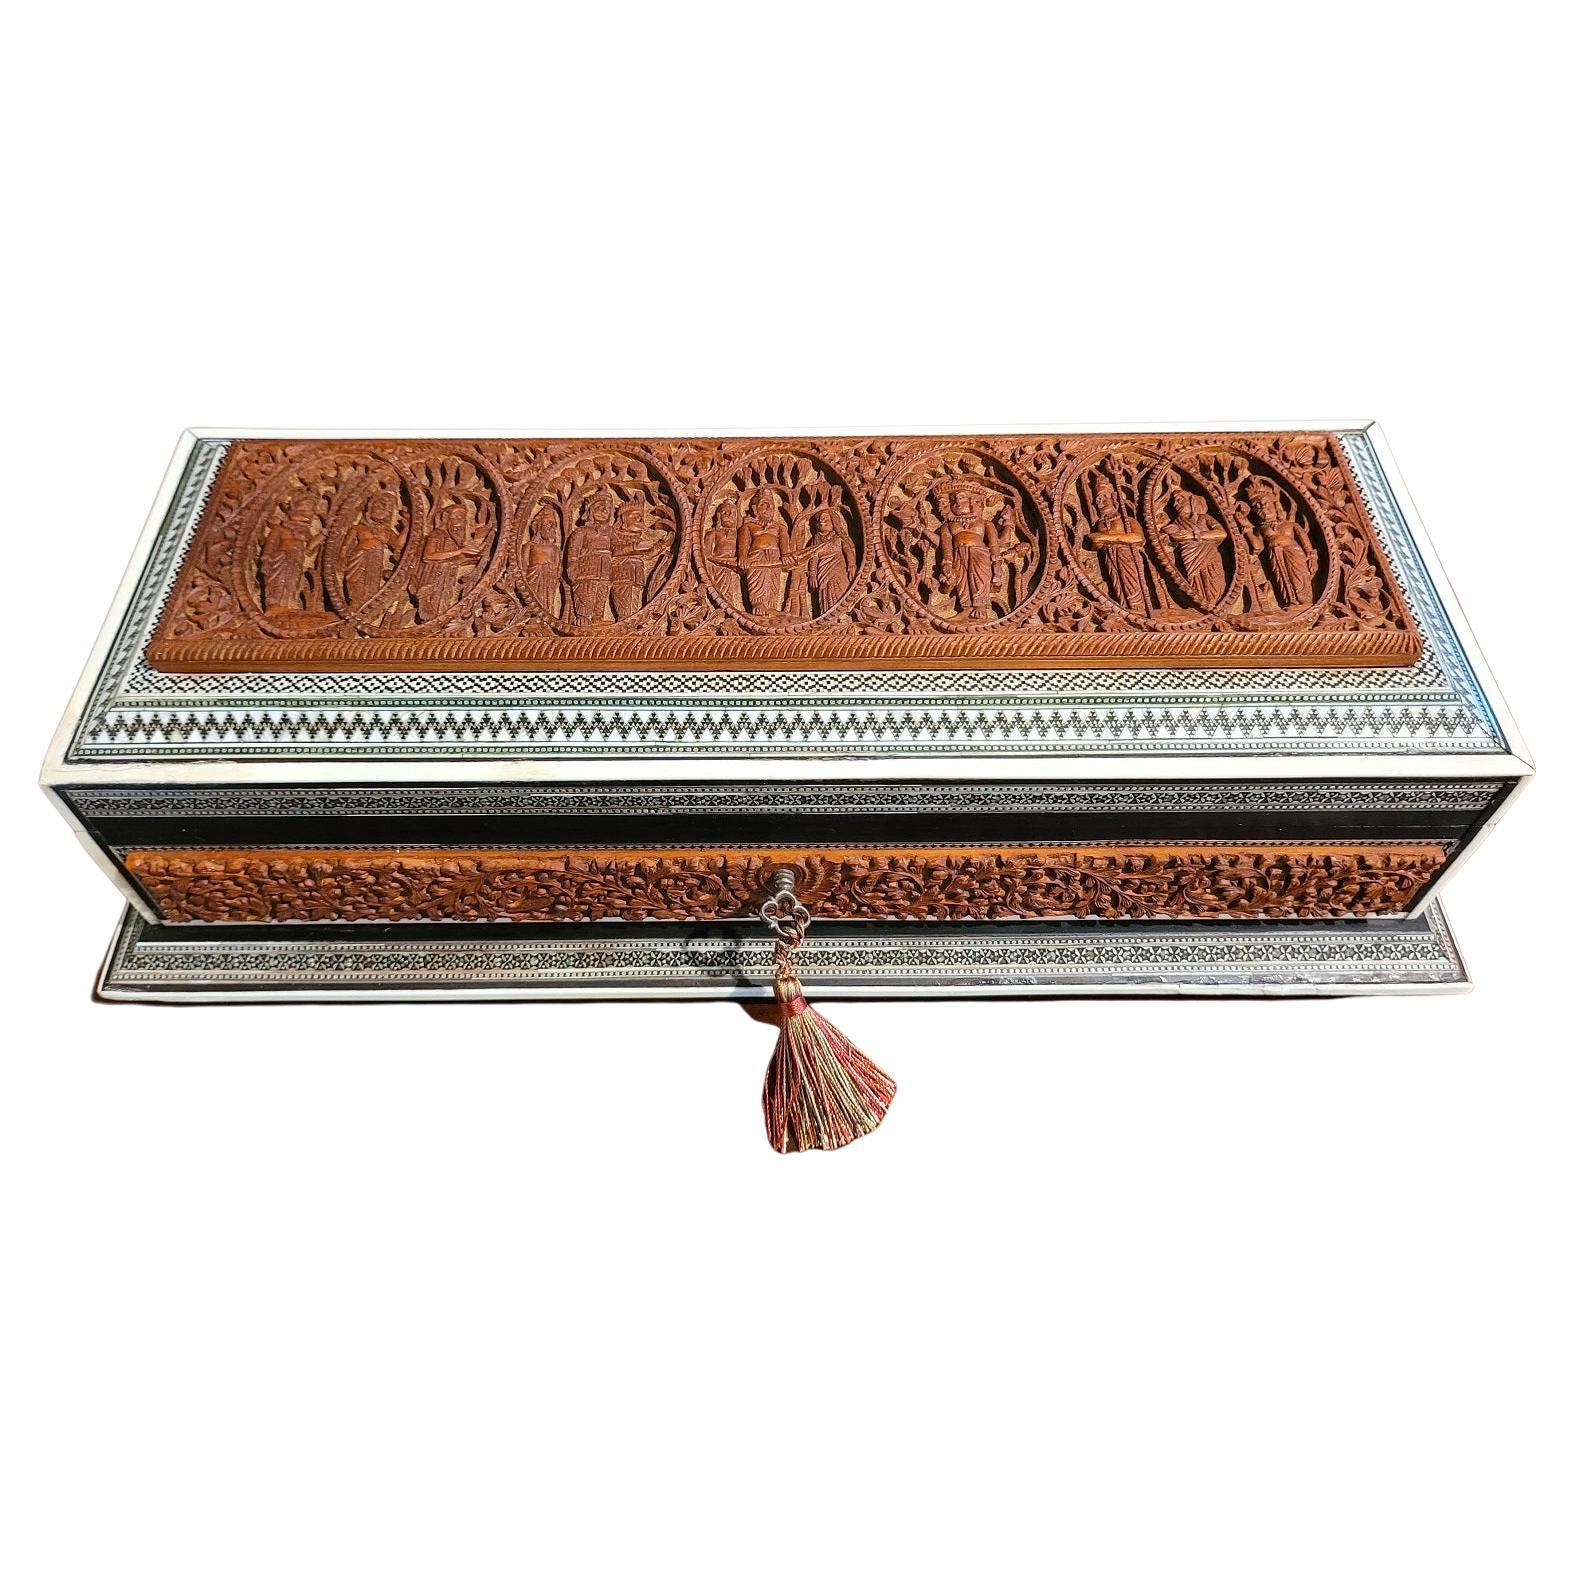 Boîte à volutes de dieux hindous en mosaïque padouk sadeli hautement sculptée de style anglo-indien du 19e siècle